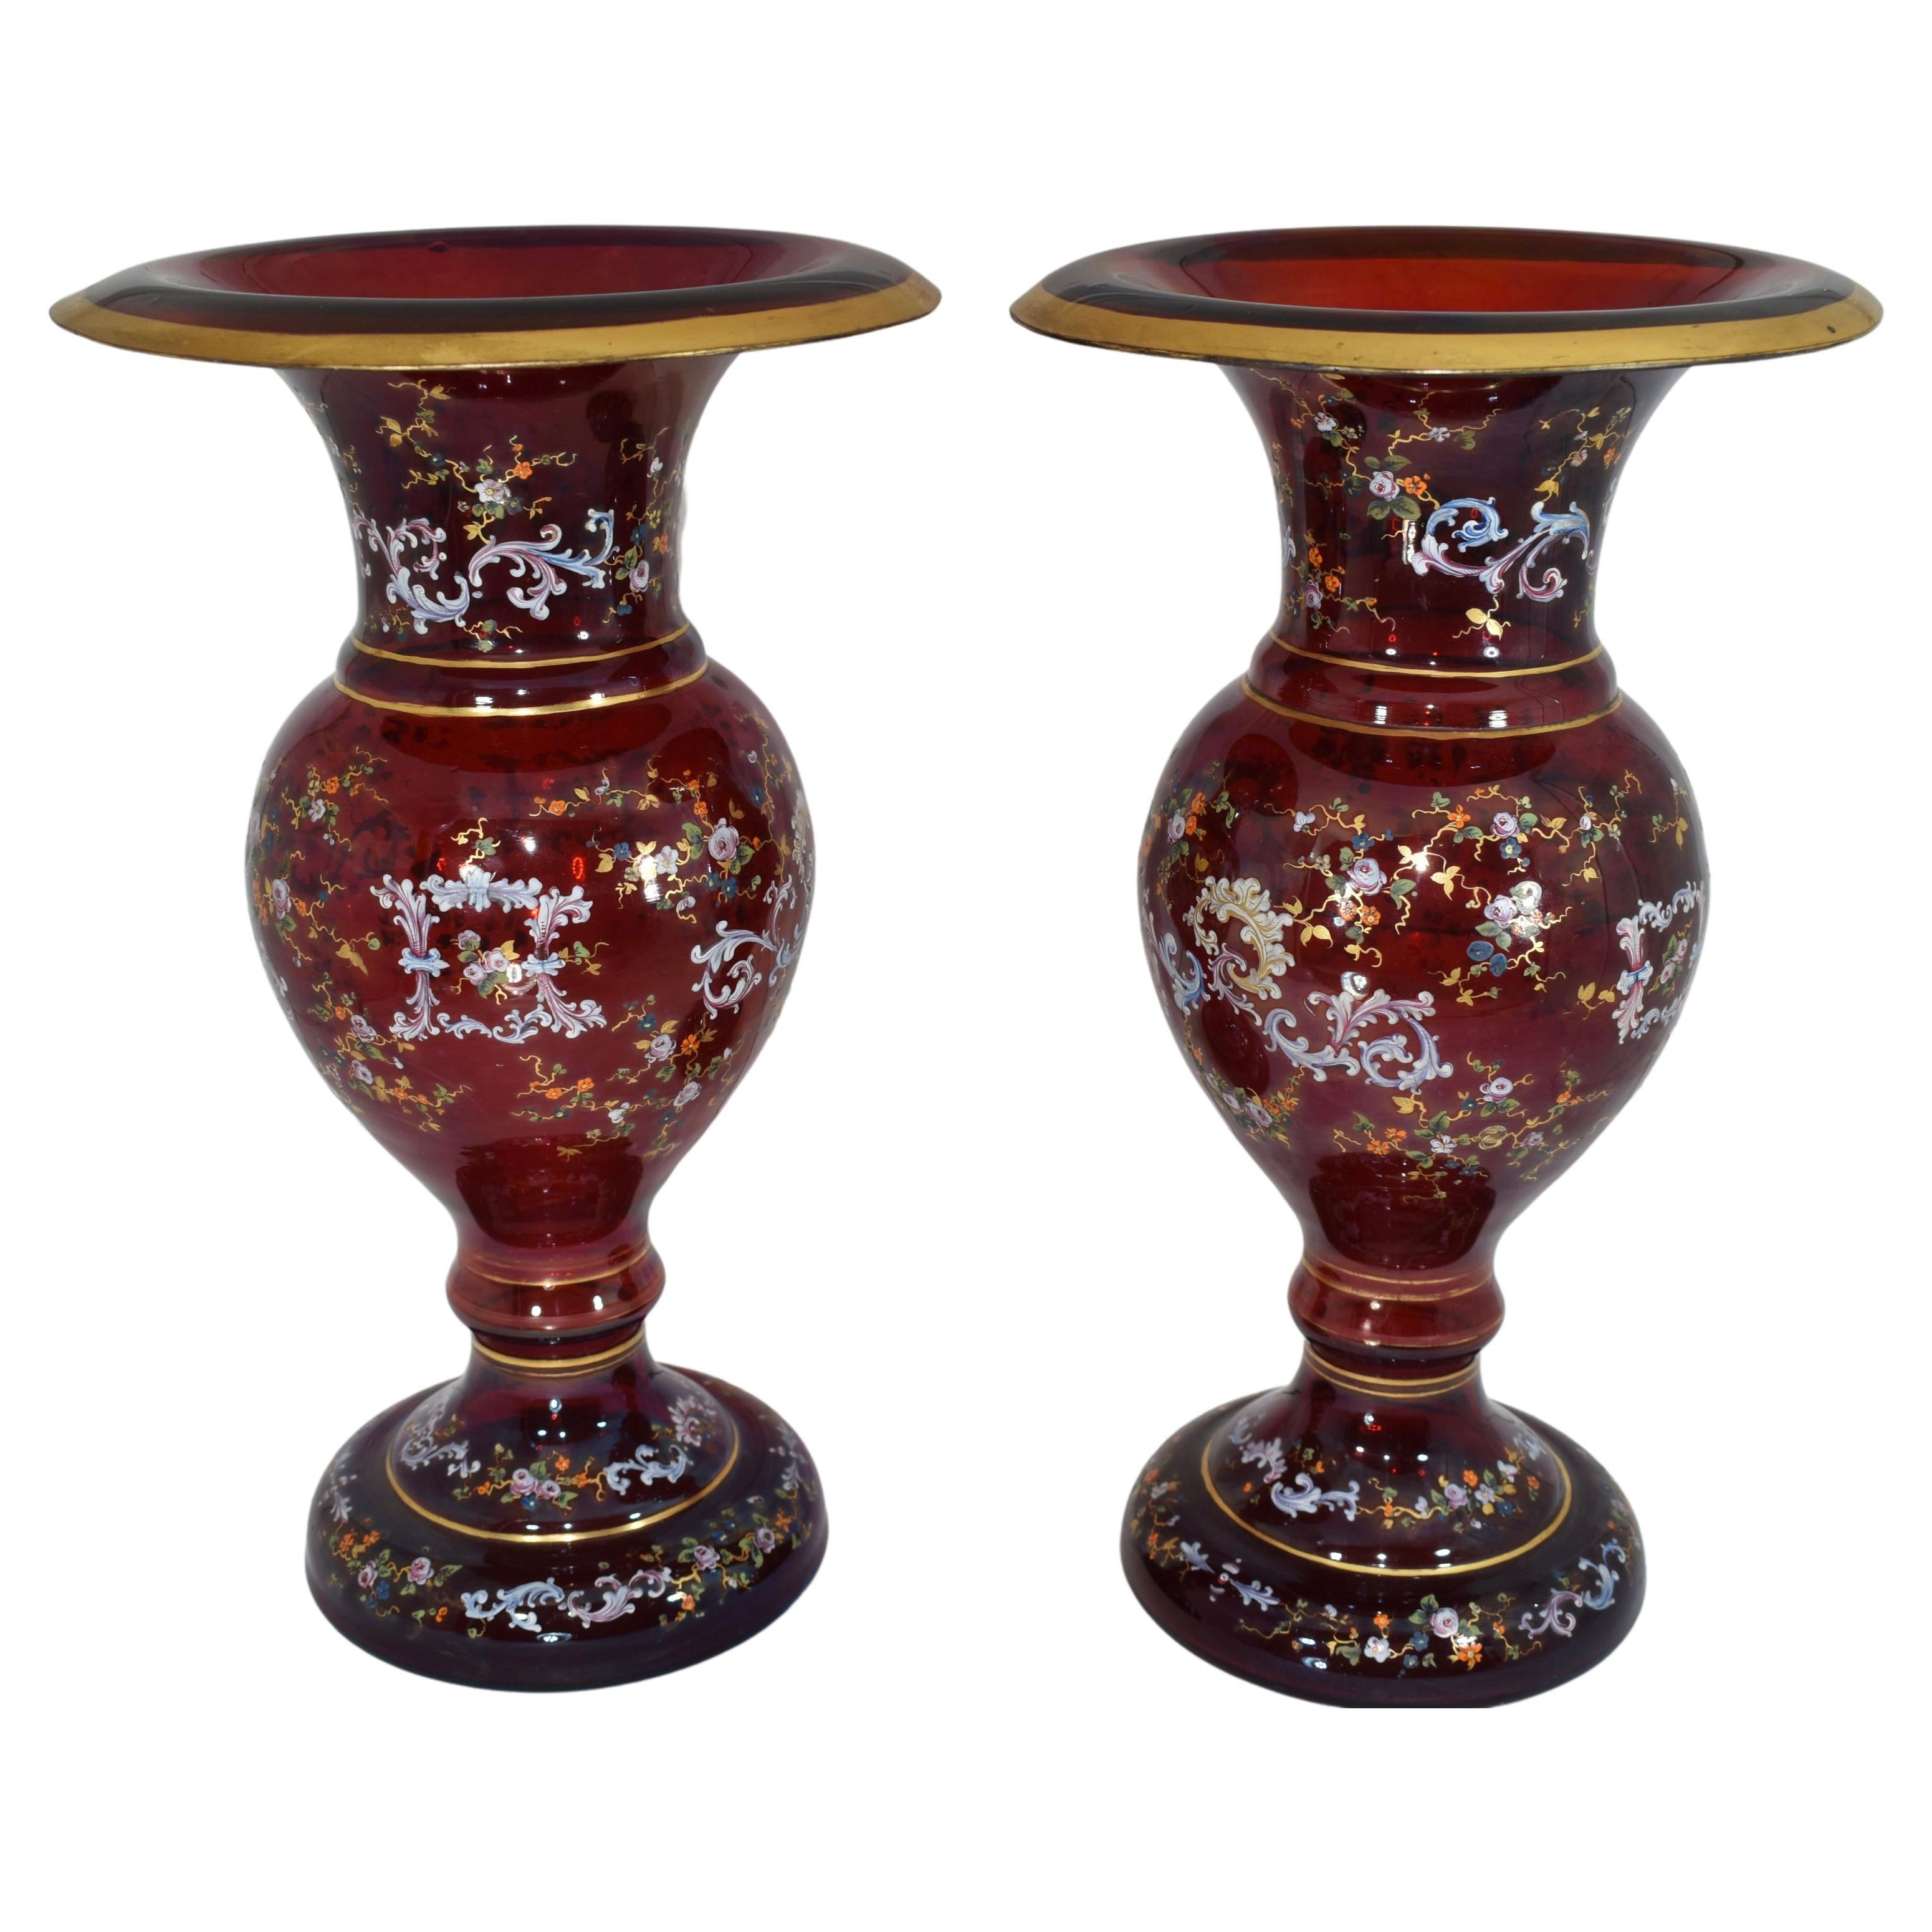 Grands vases Moser en verre rouge rubis, corps circulaire richement décoré tout autour d'une délicate dorure à l'émail, peint à la main avec des volutes et des fleurs colorées.
Bohemia, Circa 1880